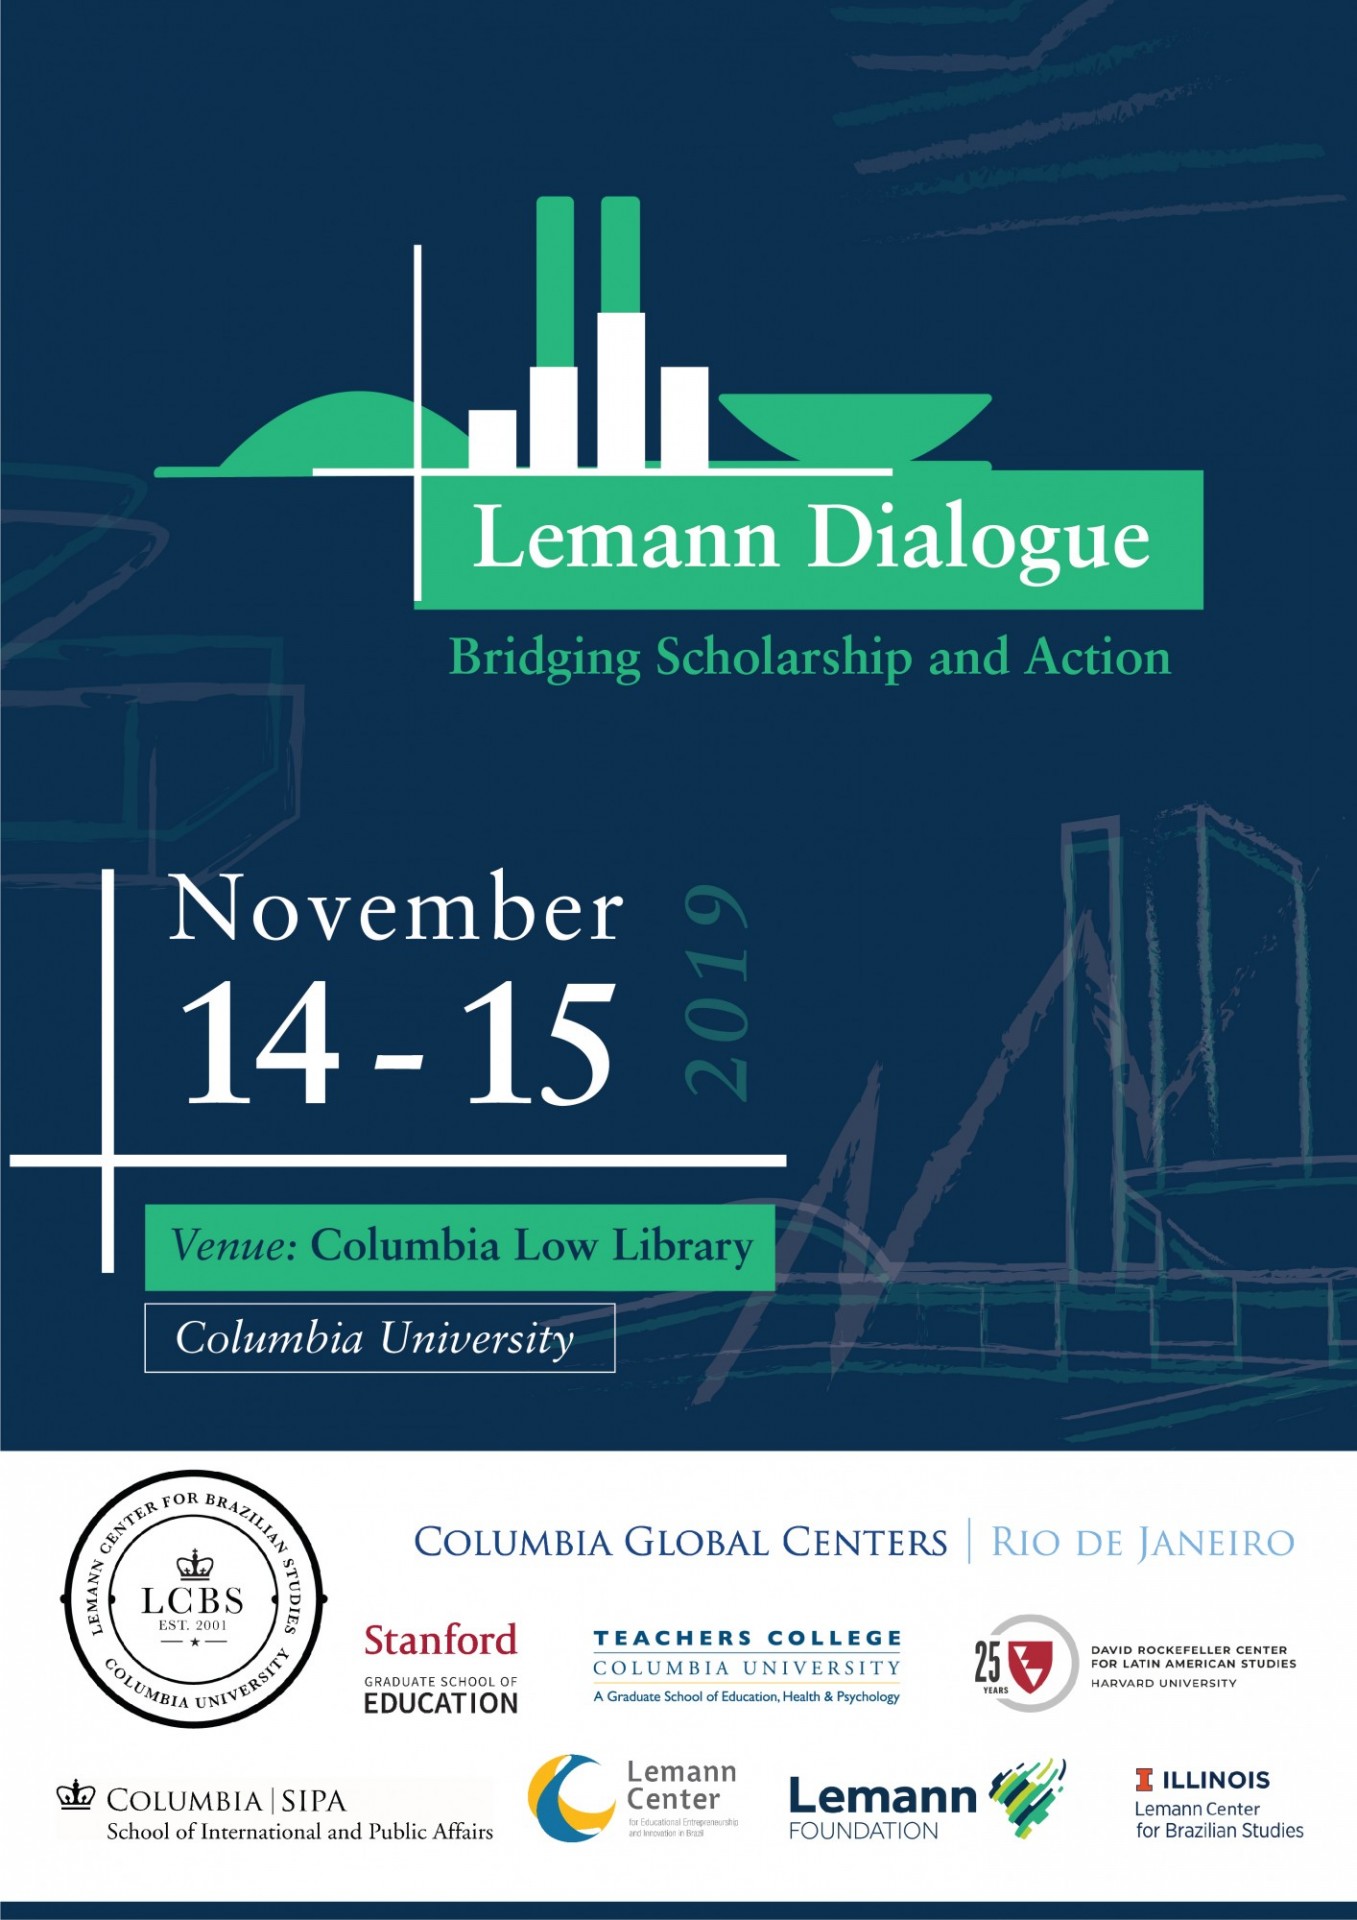 Lemann Dialogue 2019